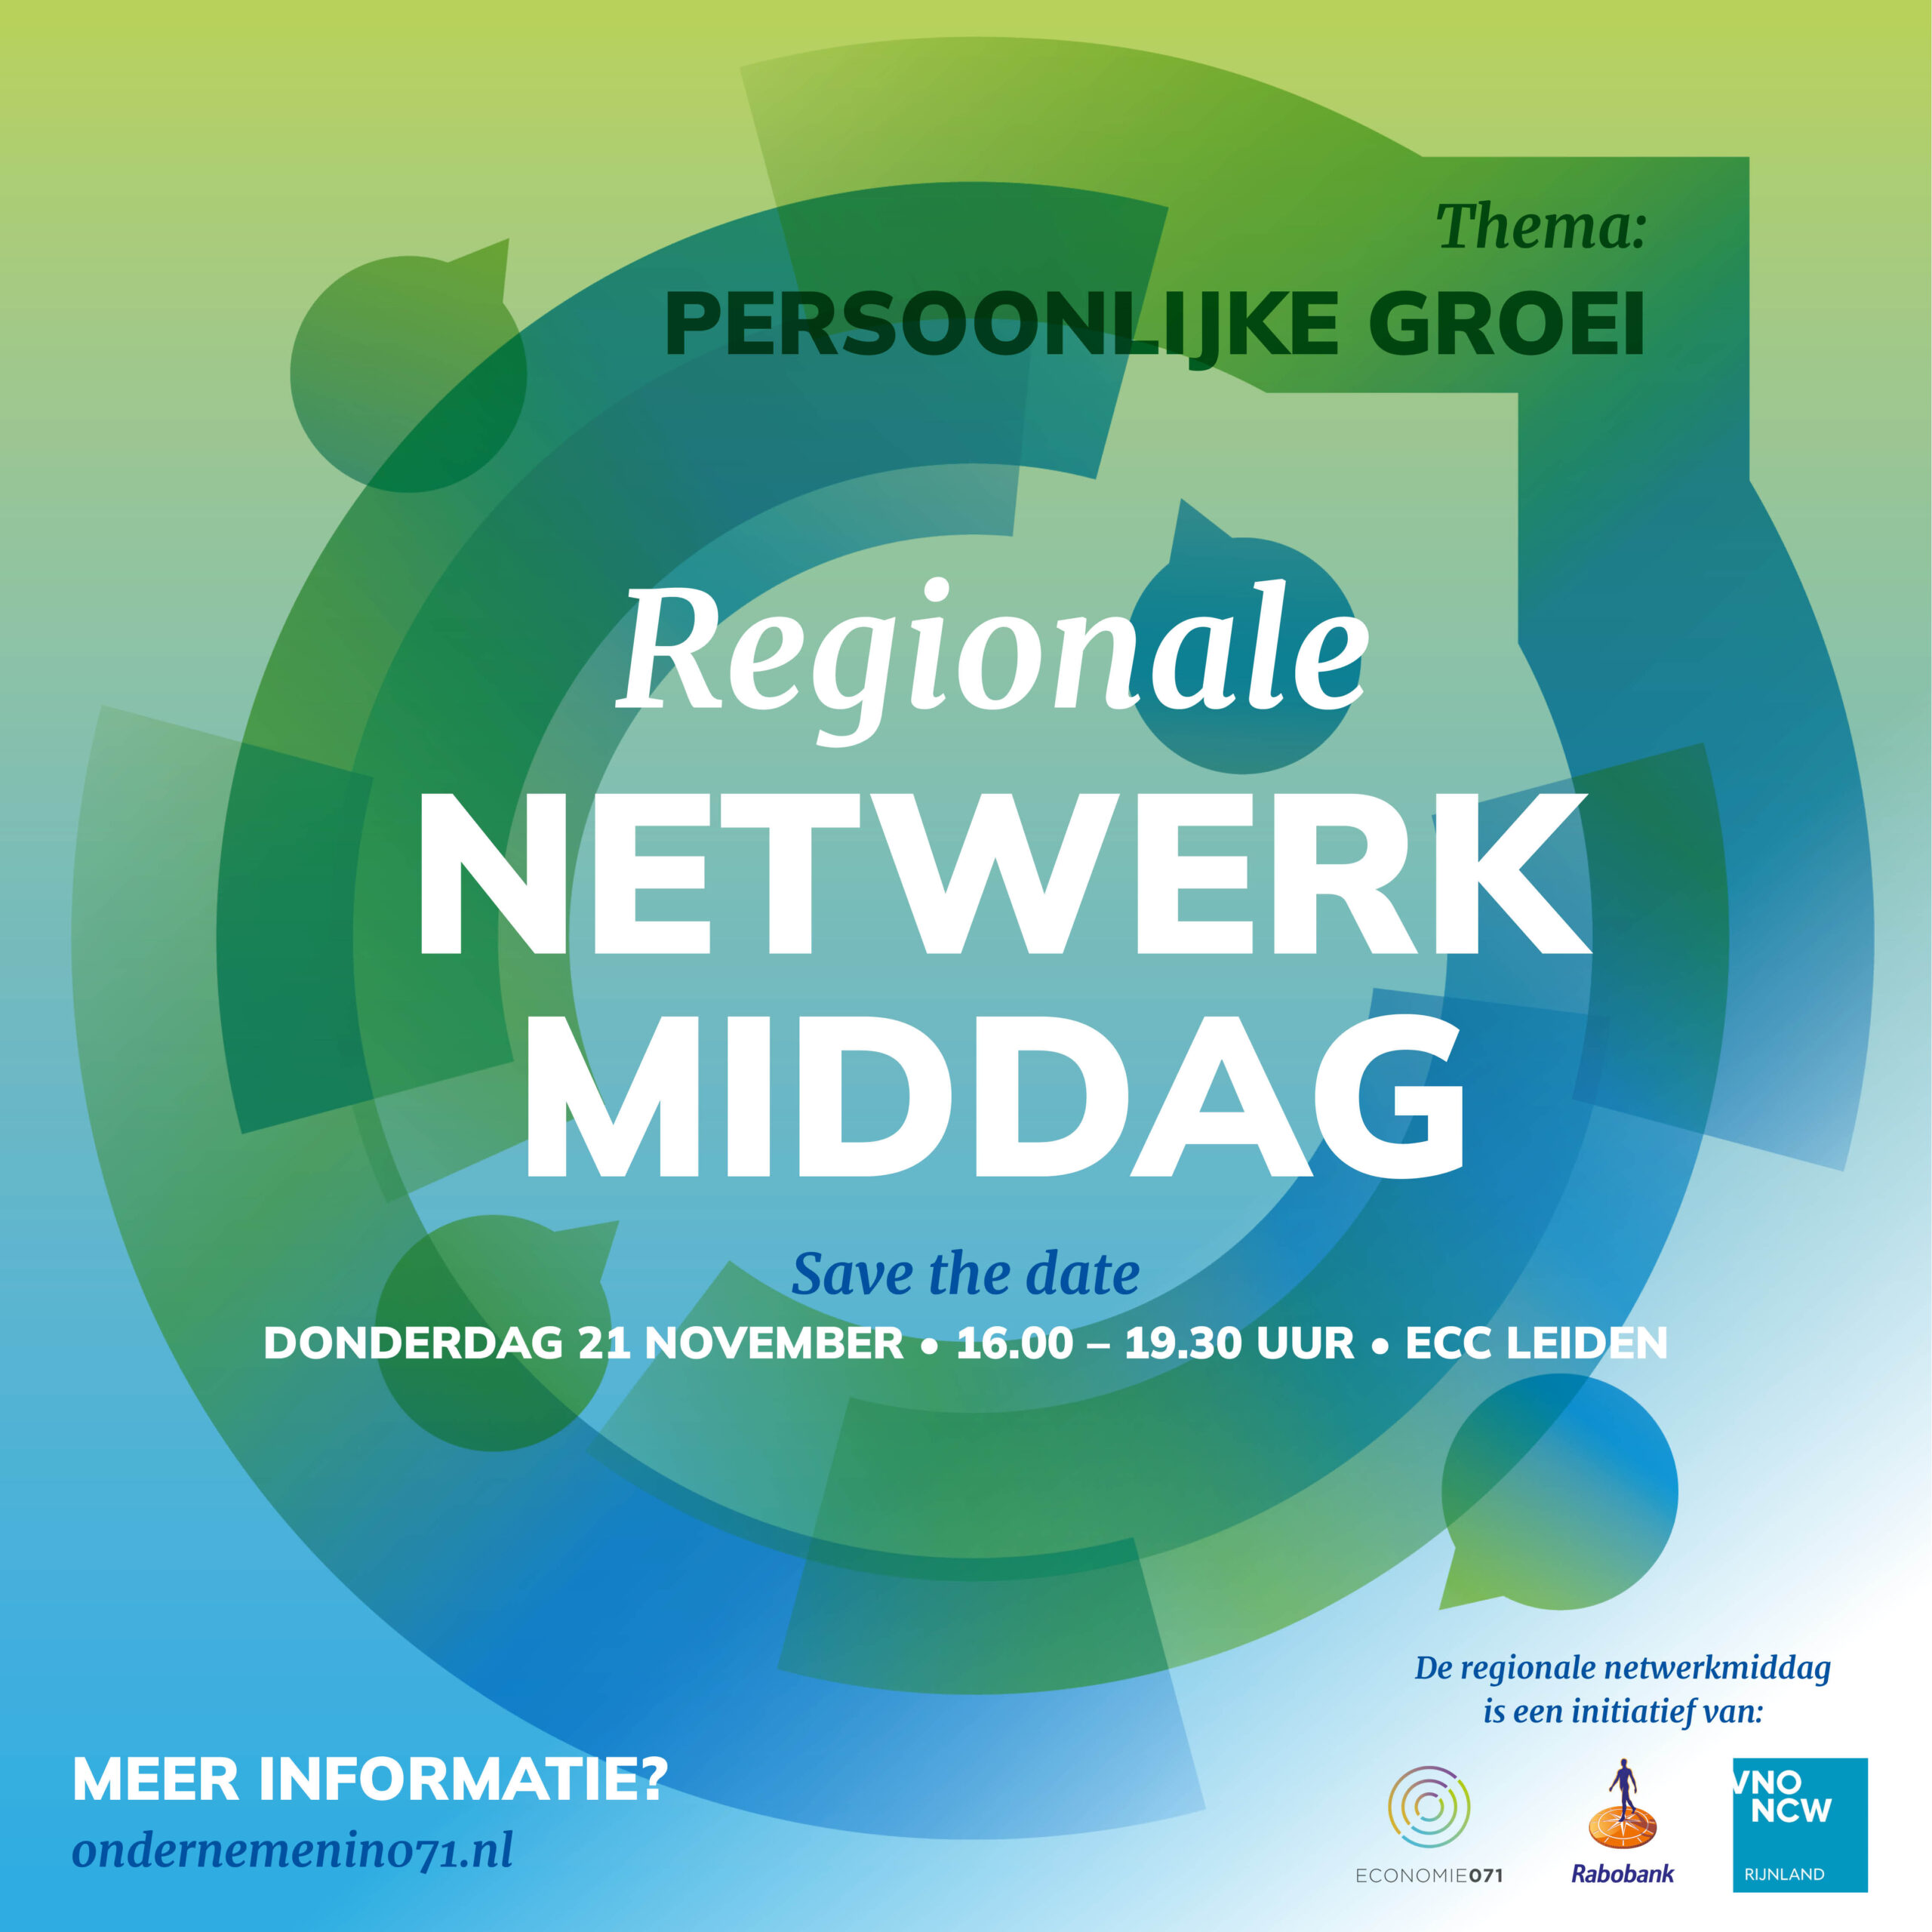 Save the date – Regionale netwerkmiddag in teken van persoonlijke groei